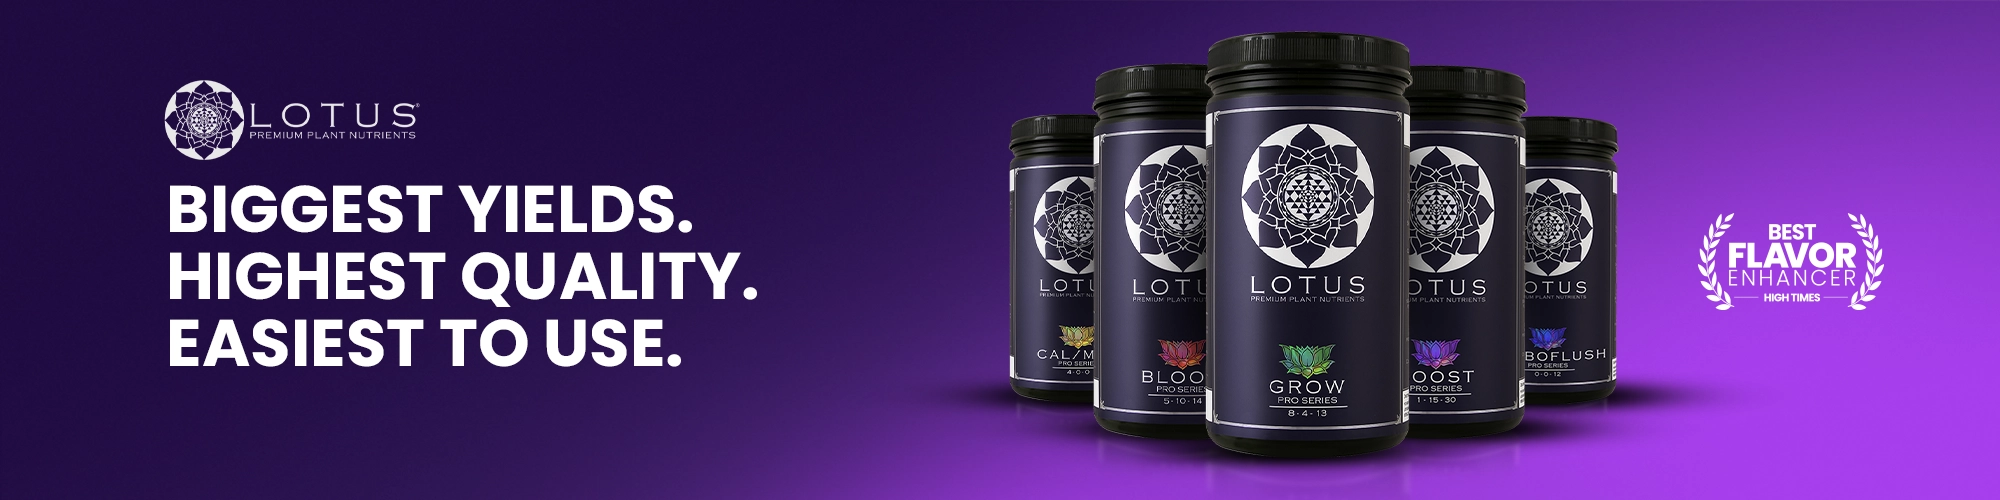 Lotus Premium Nutrients Best Flavor